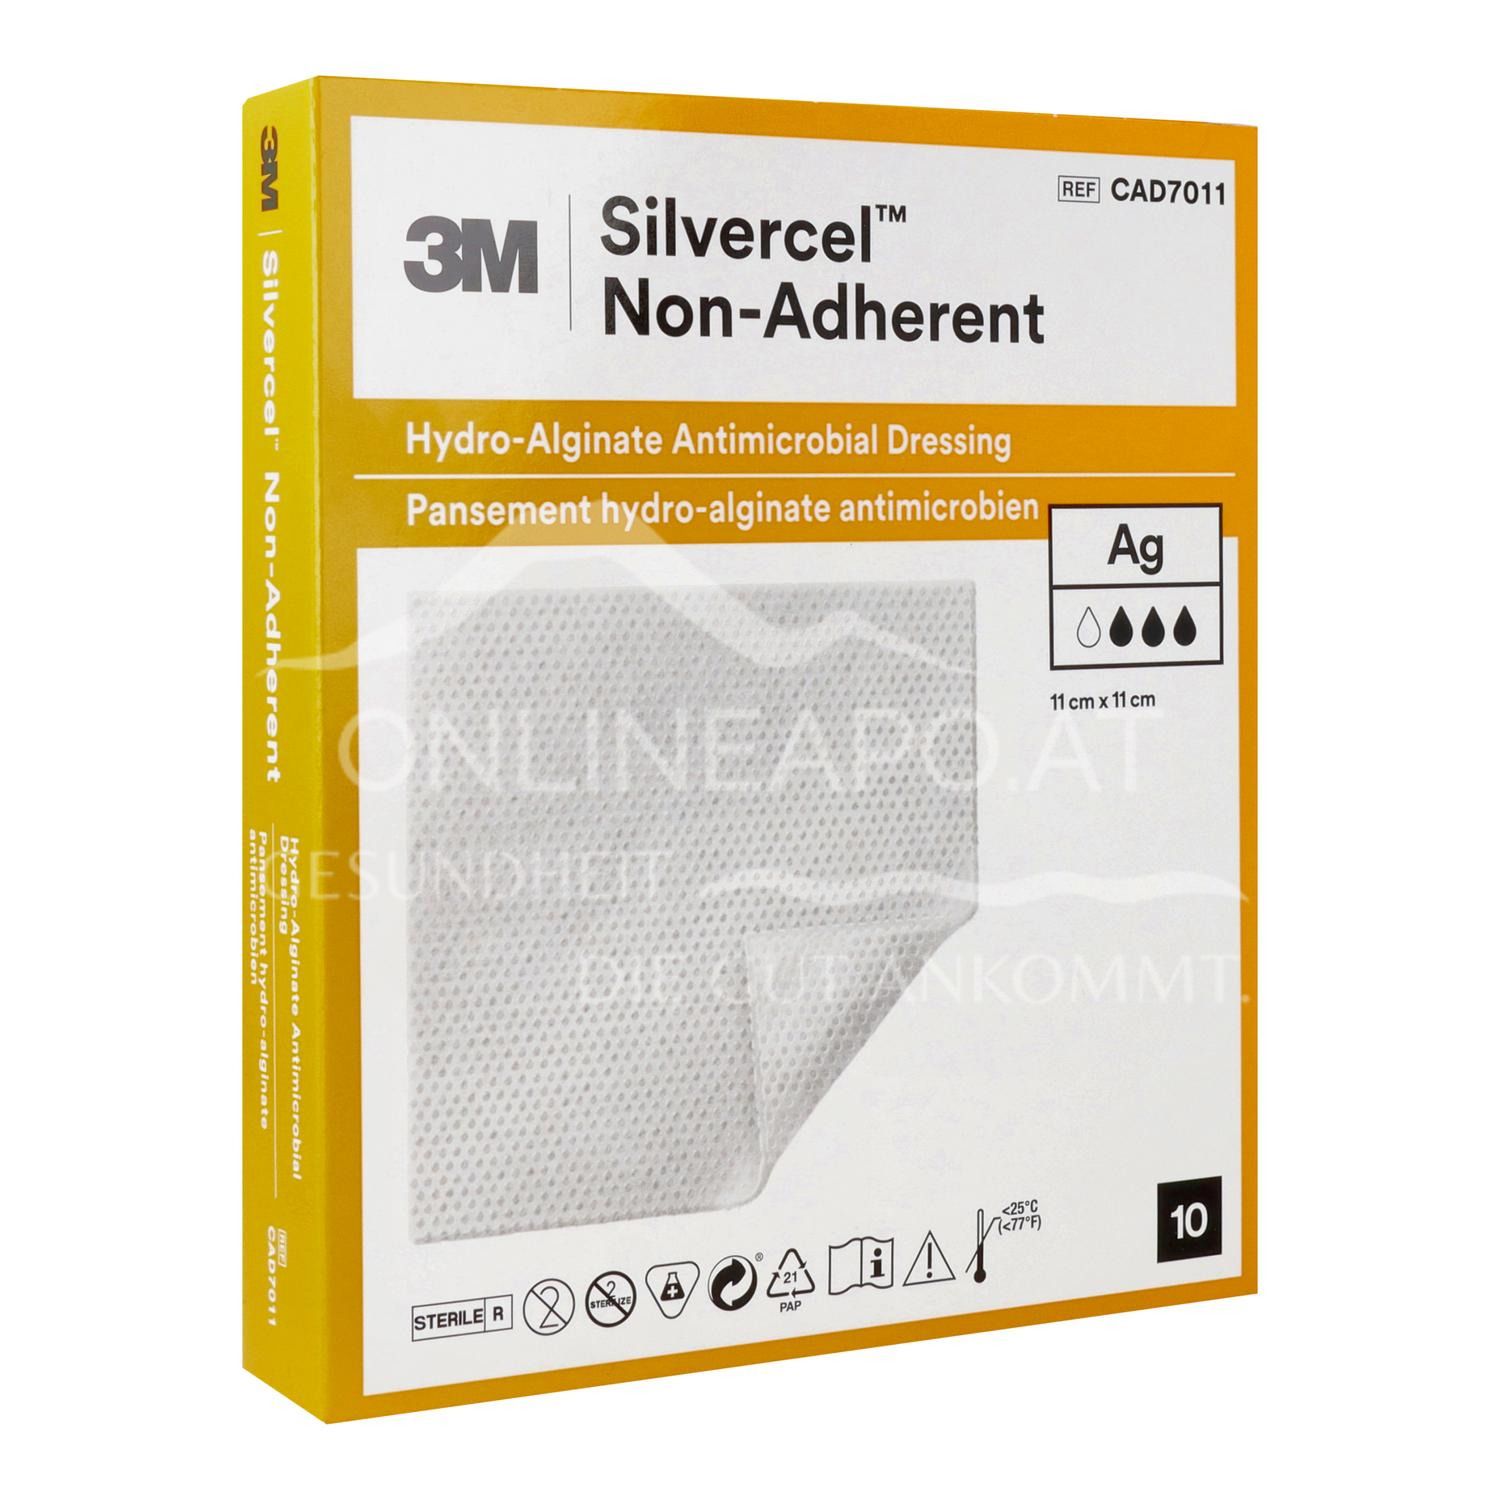 3M™ Silvercel™ Non-Adherent Silberhaltige antimikrobielle Hydroalginat-Wundauflagen steril, 11 x 11 cm